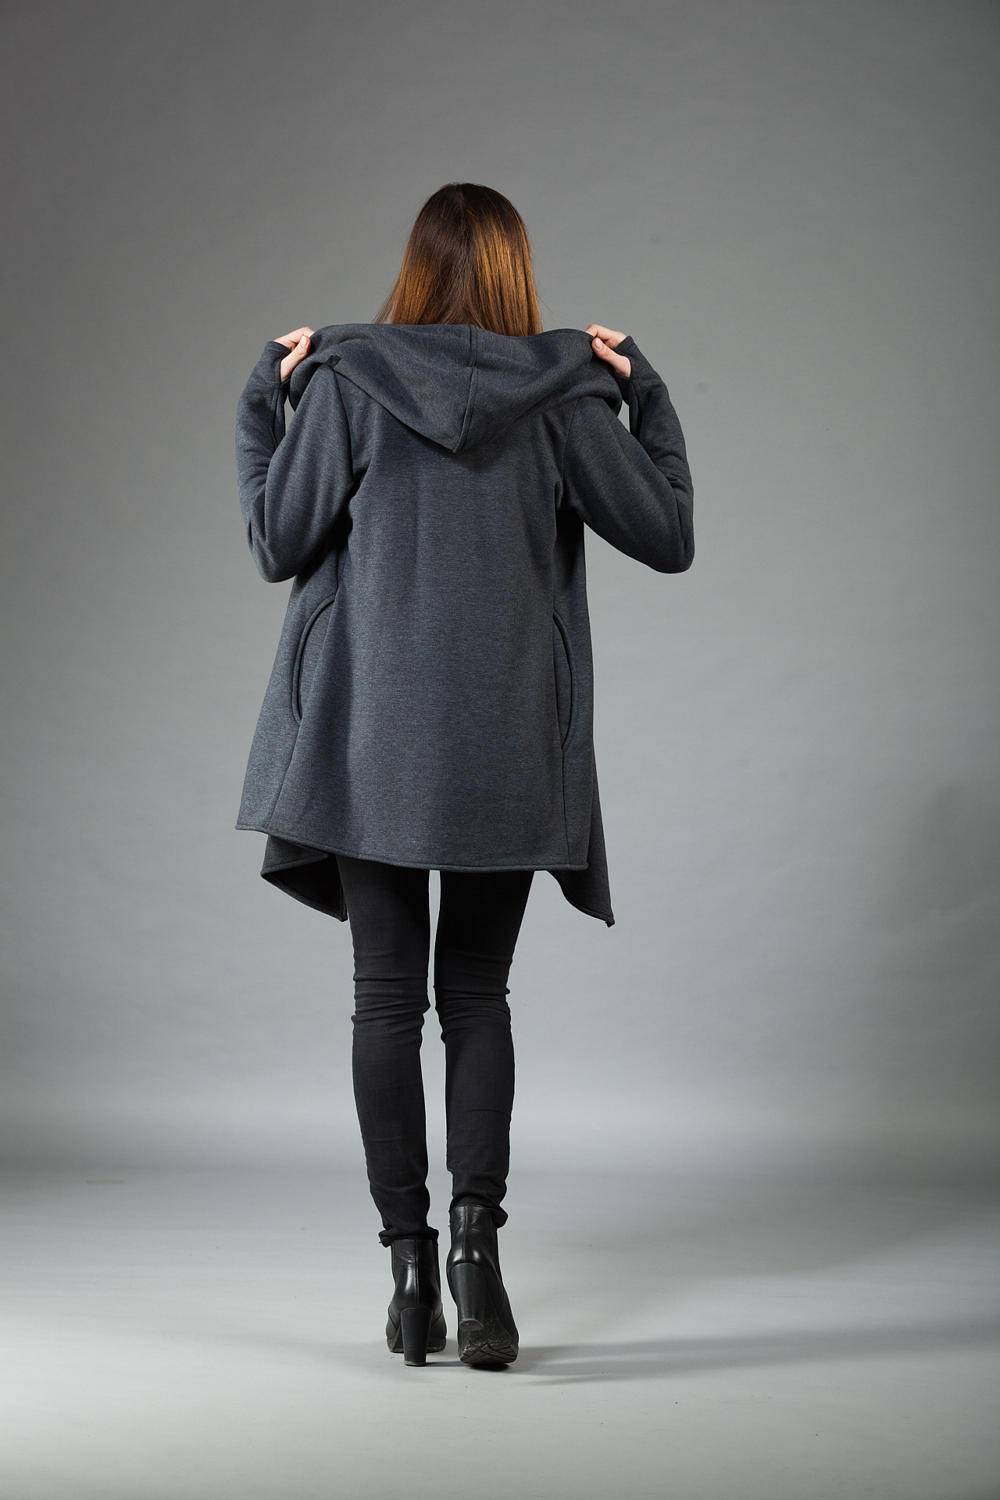 Asymmetrical Jacket Zipper Hoodie Black Sweatshirt Women - Etsy